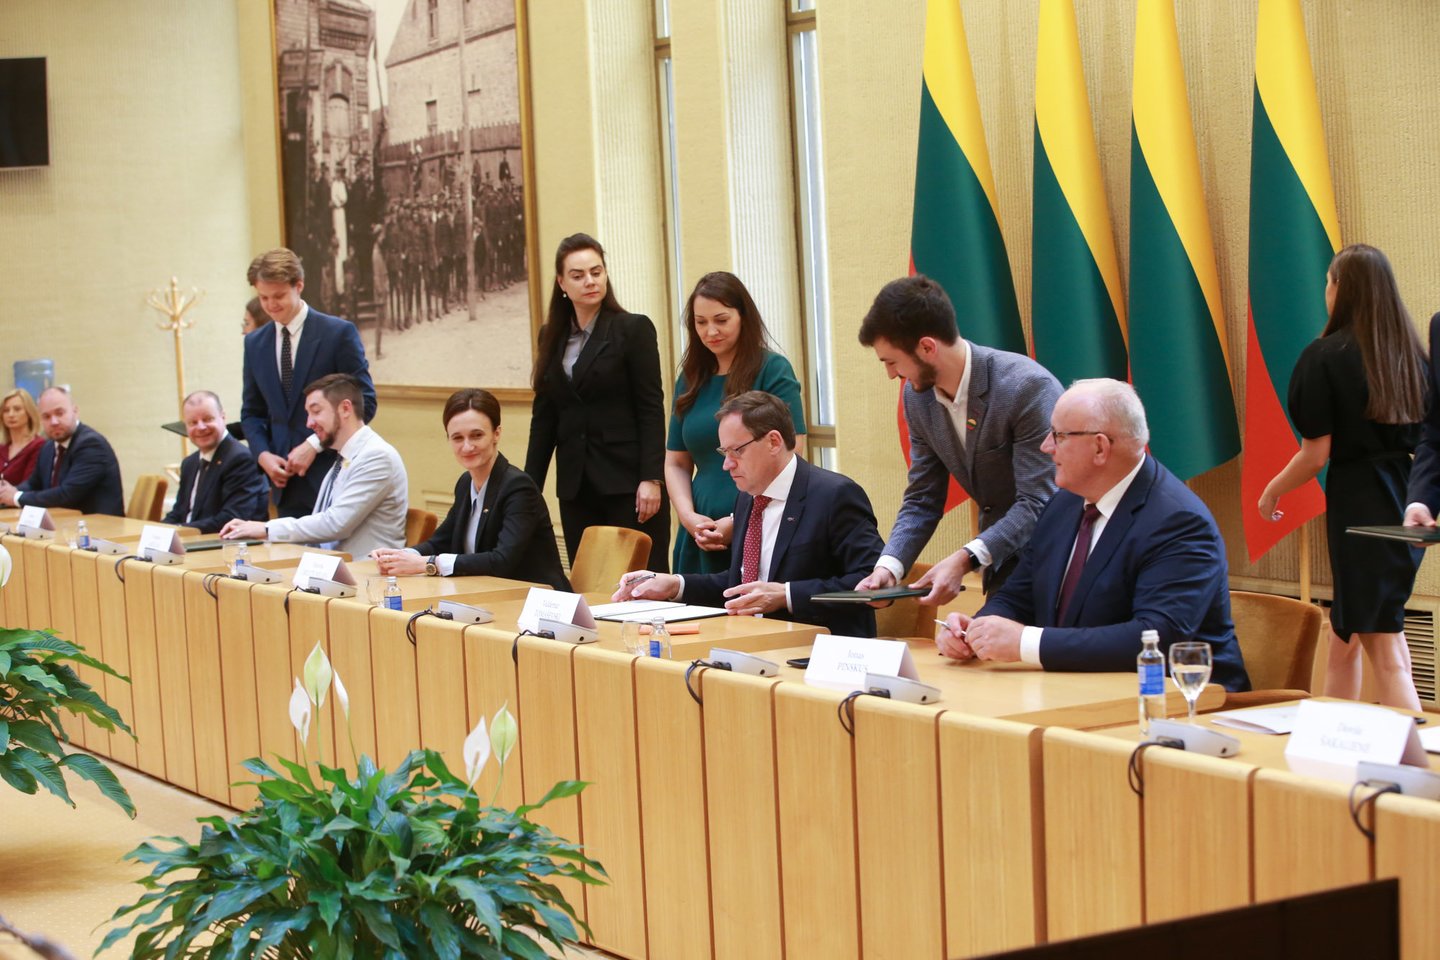  Partijos pasirašė naują susitarimą dėl gynybos: sieks išlaikyti finansavimą.<br> R.Danisevičiaus nuotr.